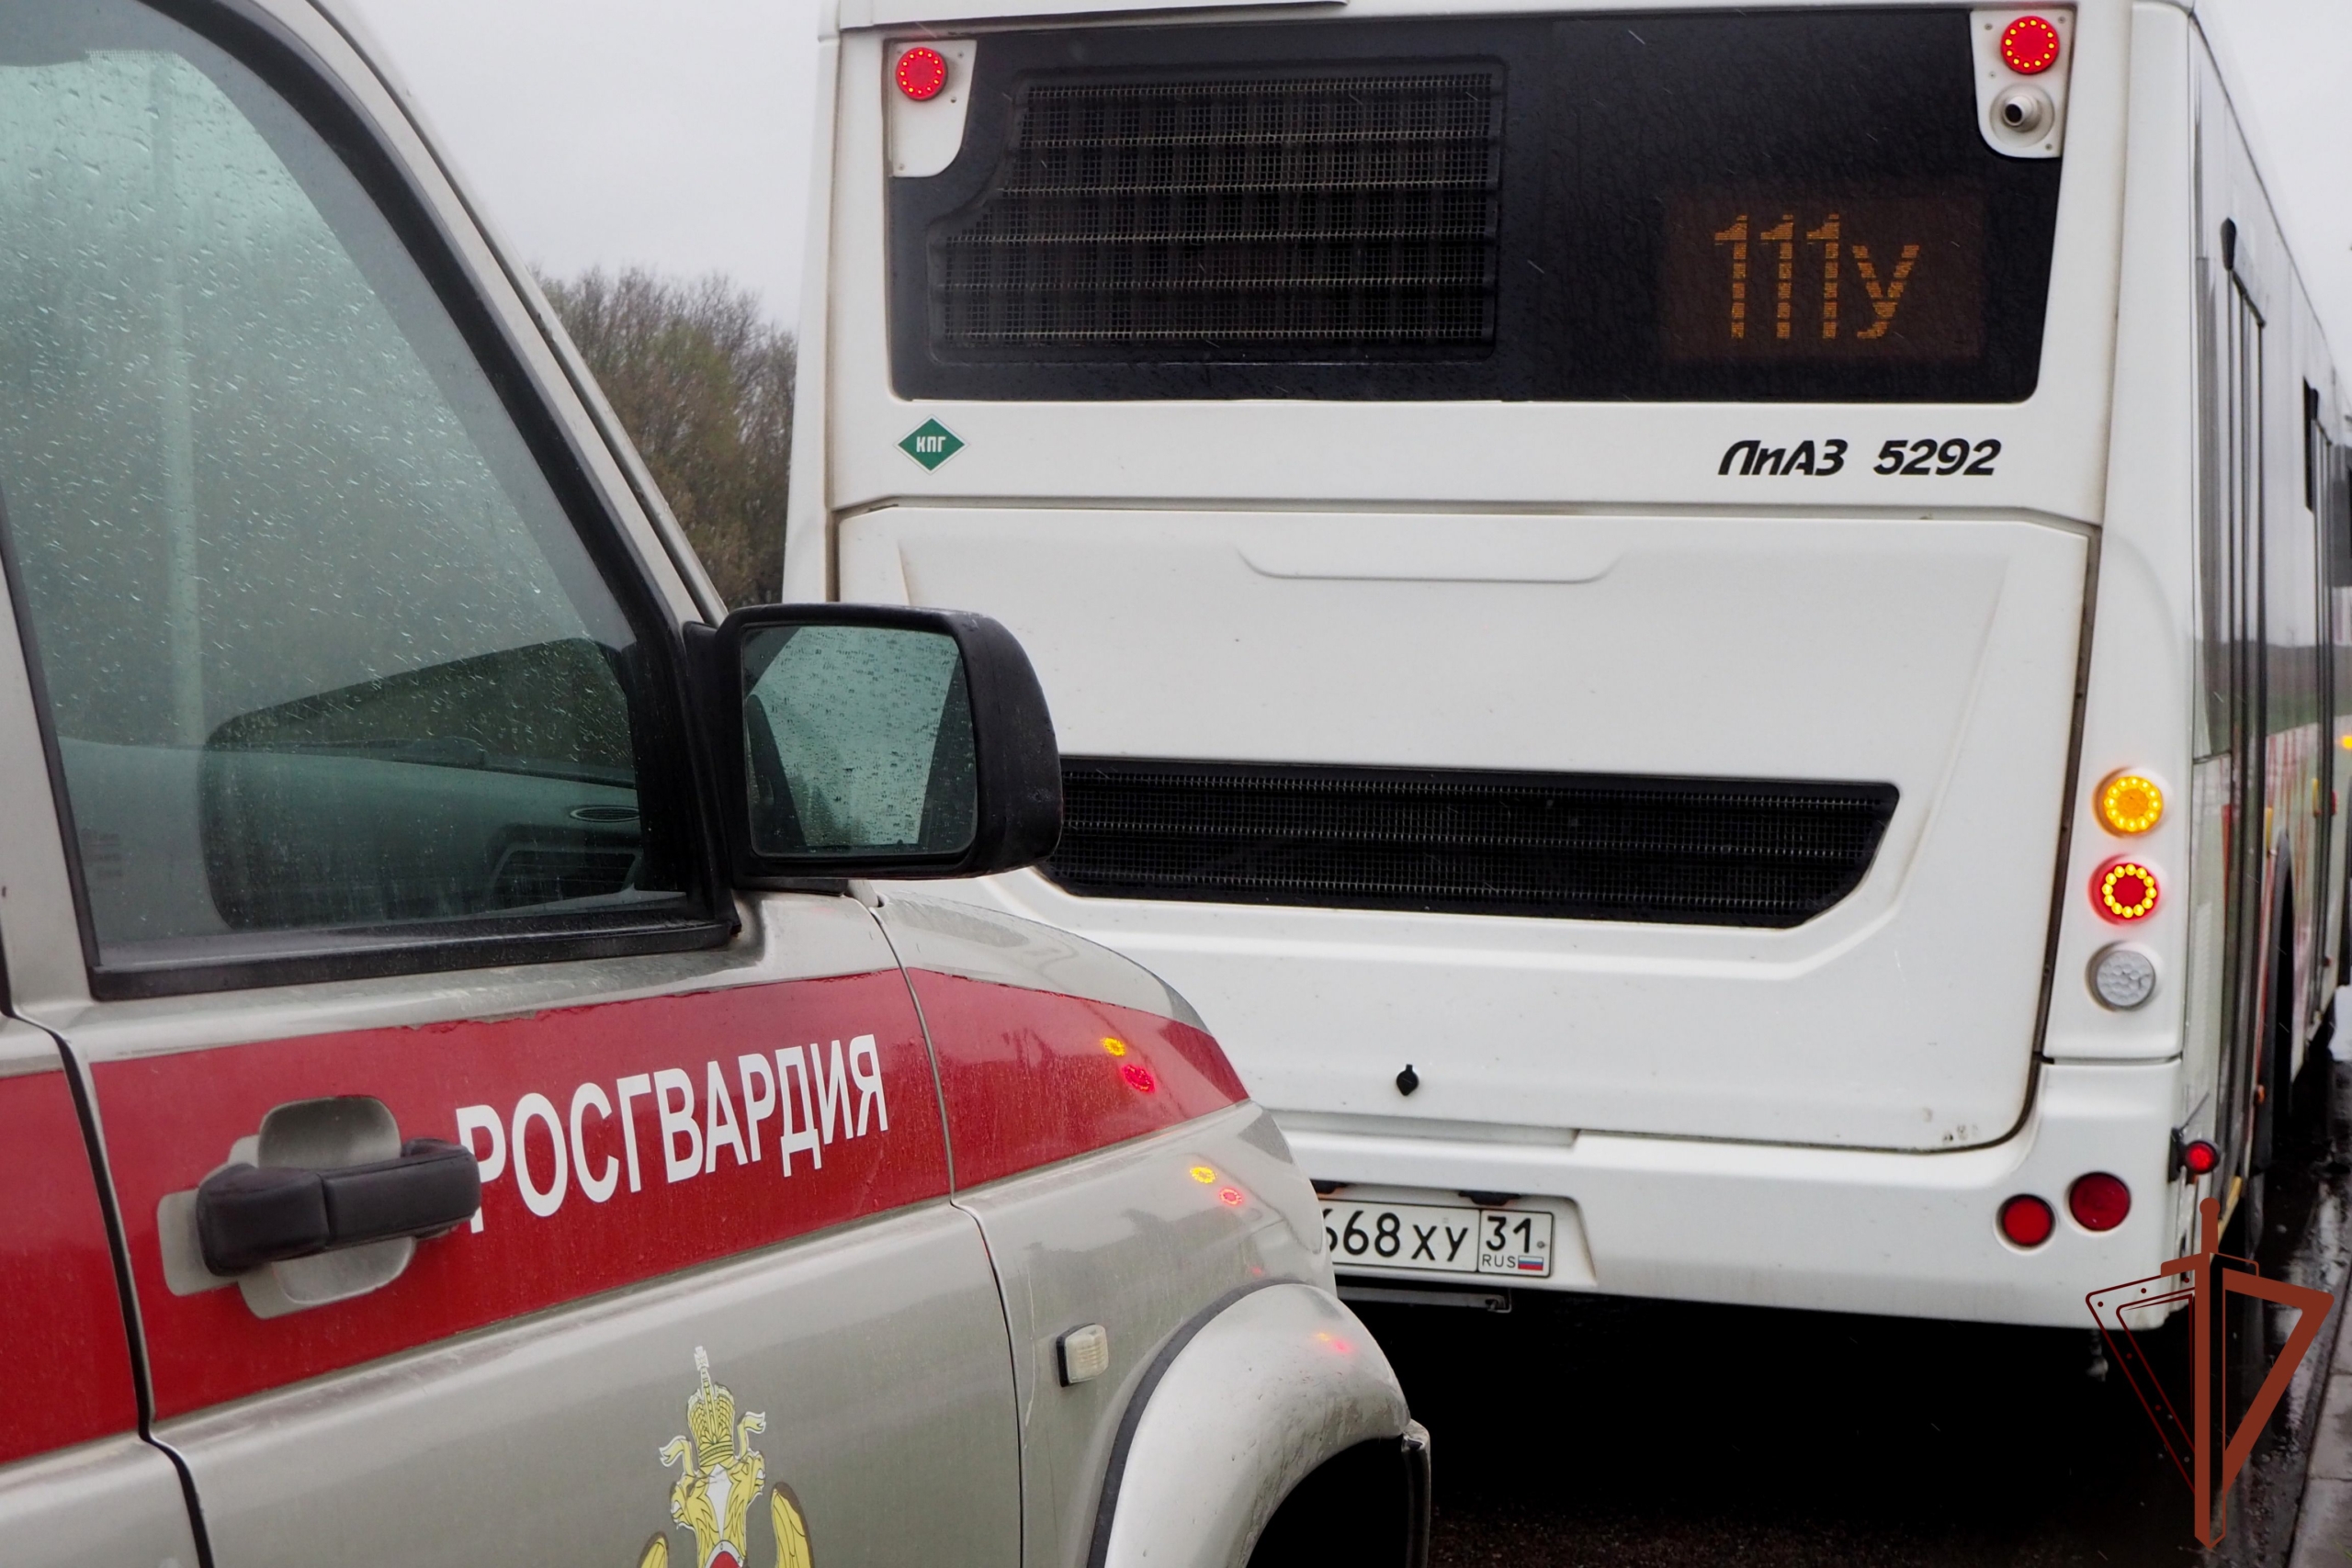 Около 200 автобусов взяла под охрану Росгвардия в Белгороде